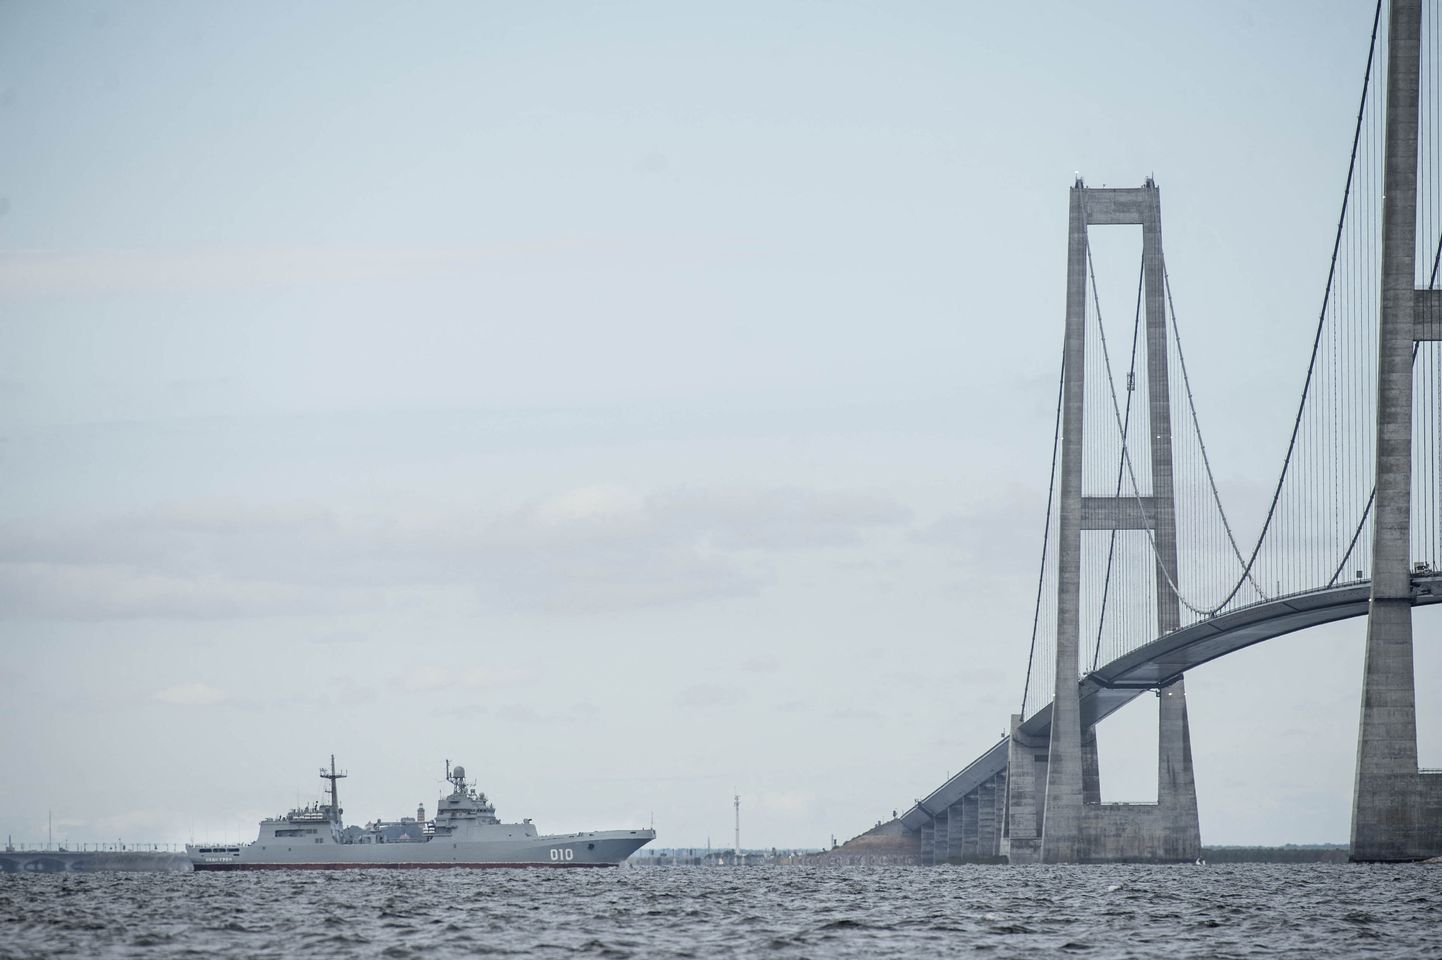 Vene sõjalaev Suure-Belti kanalis, Fyni saare lähedal.